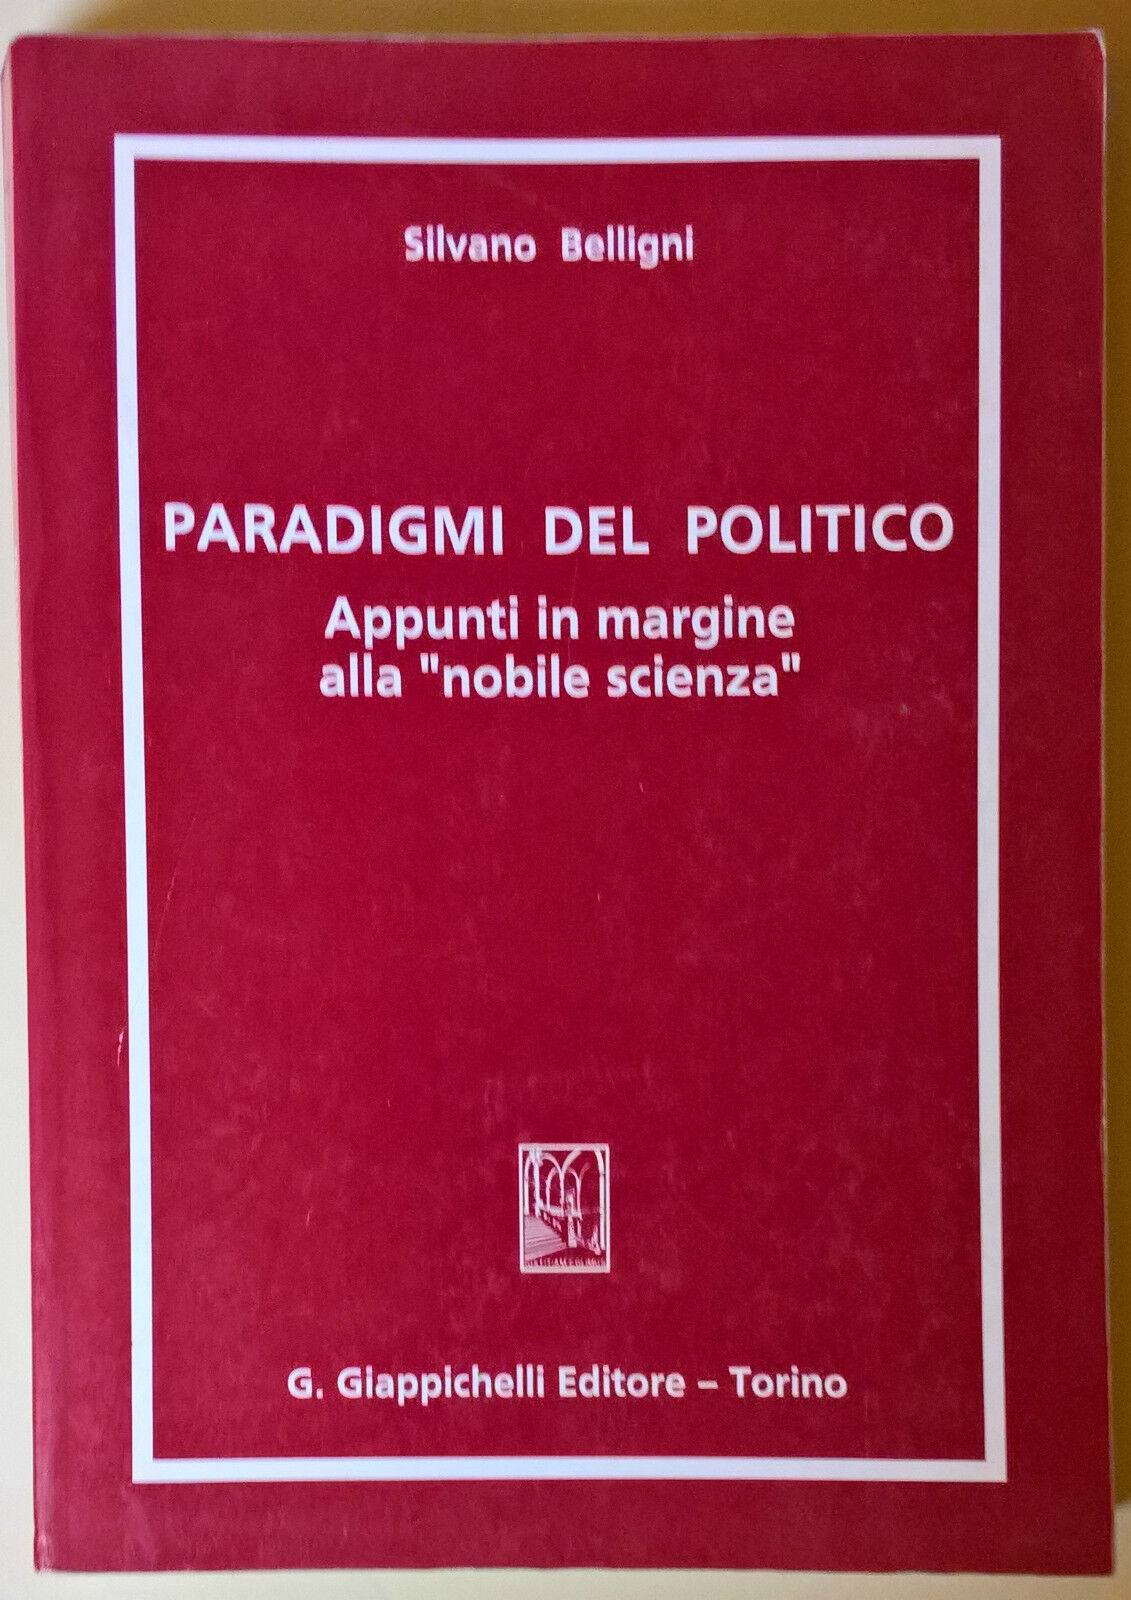 Paradigmi del politico - Silvano Belligni - Giappichelli, 1991 - L 